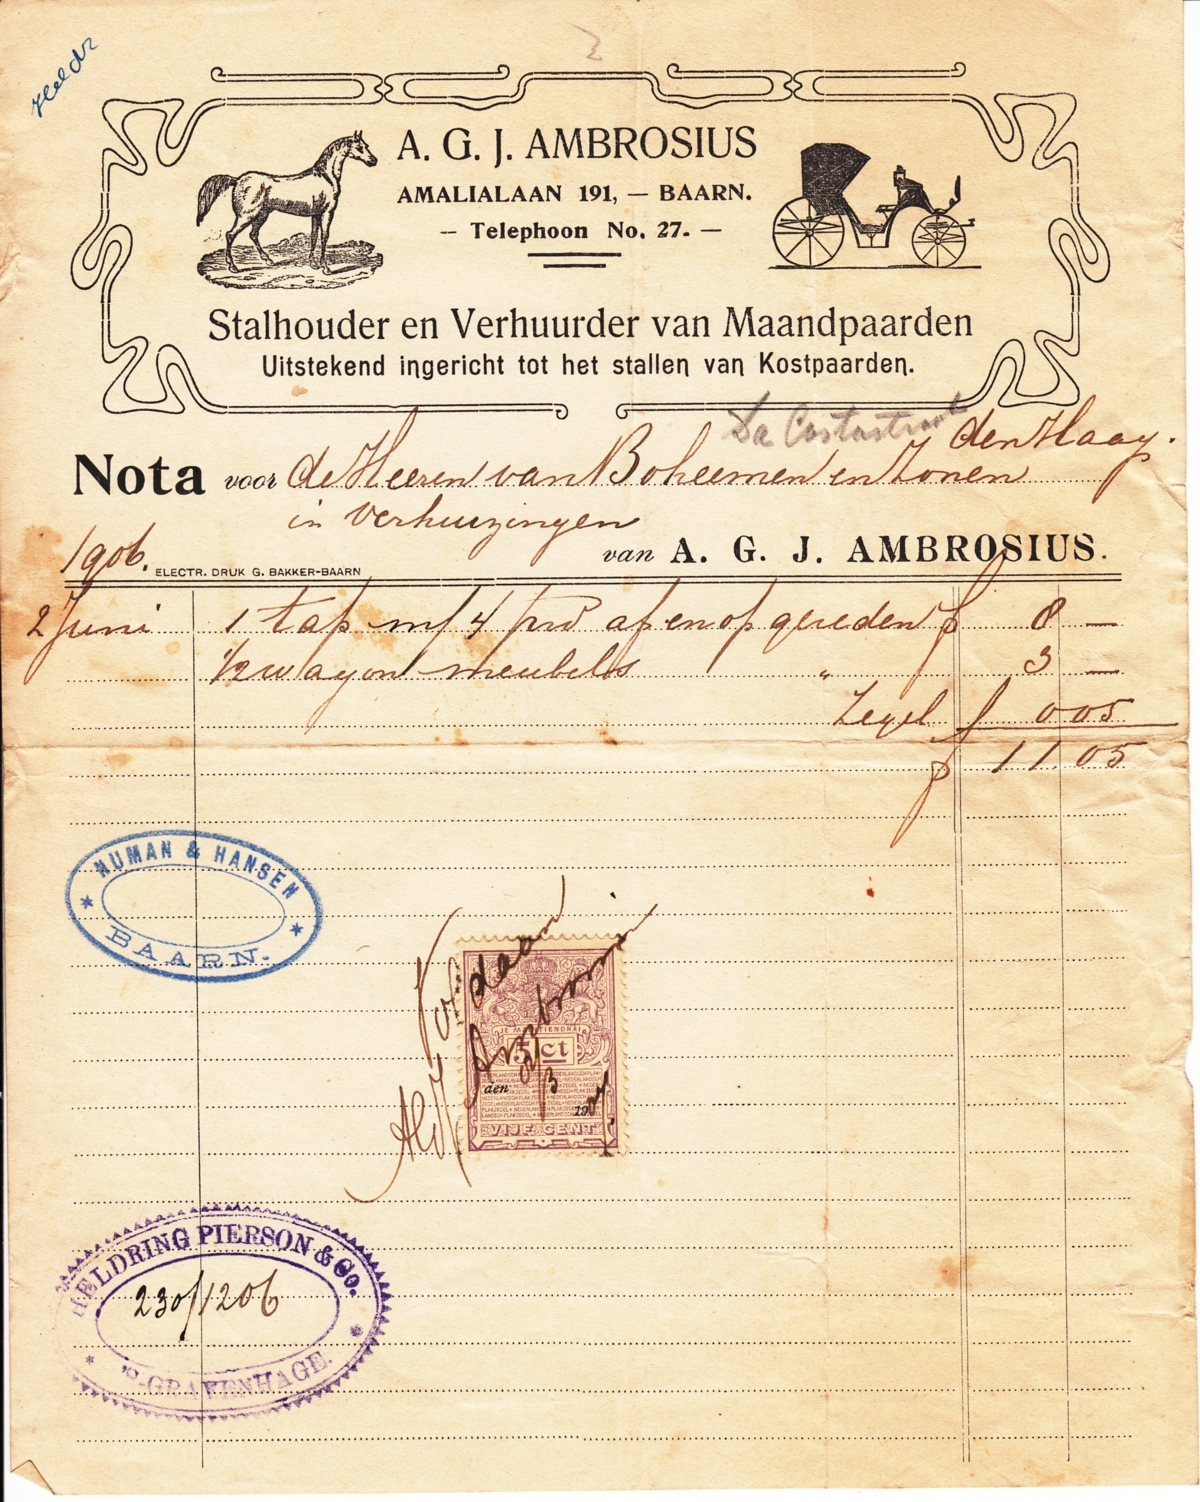 A.G.J. Ambrosius, Stalhouder en Verhuurder van Maandpaarden